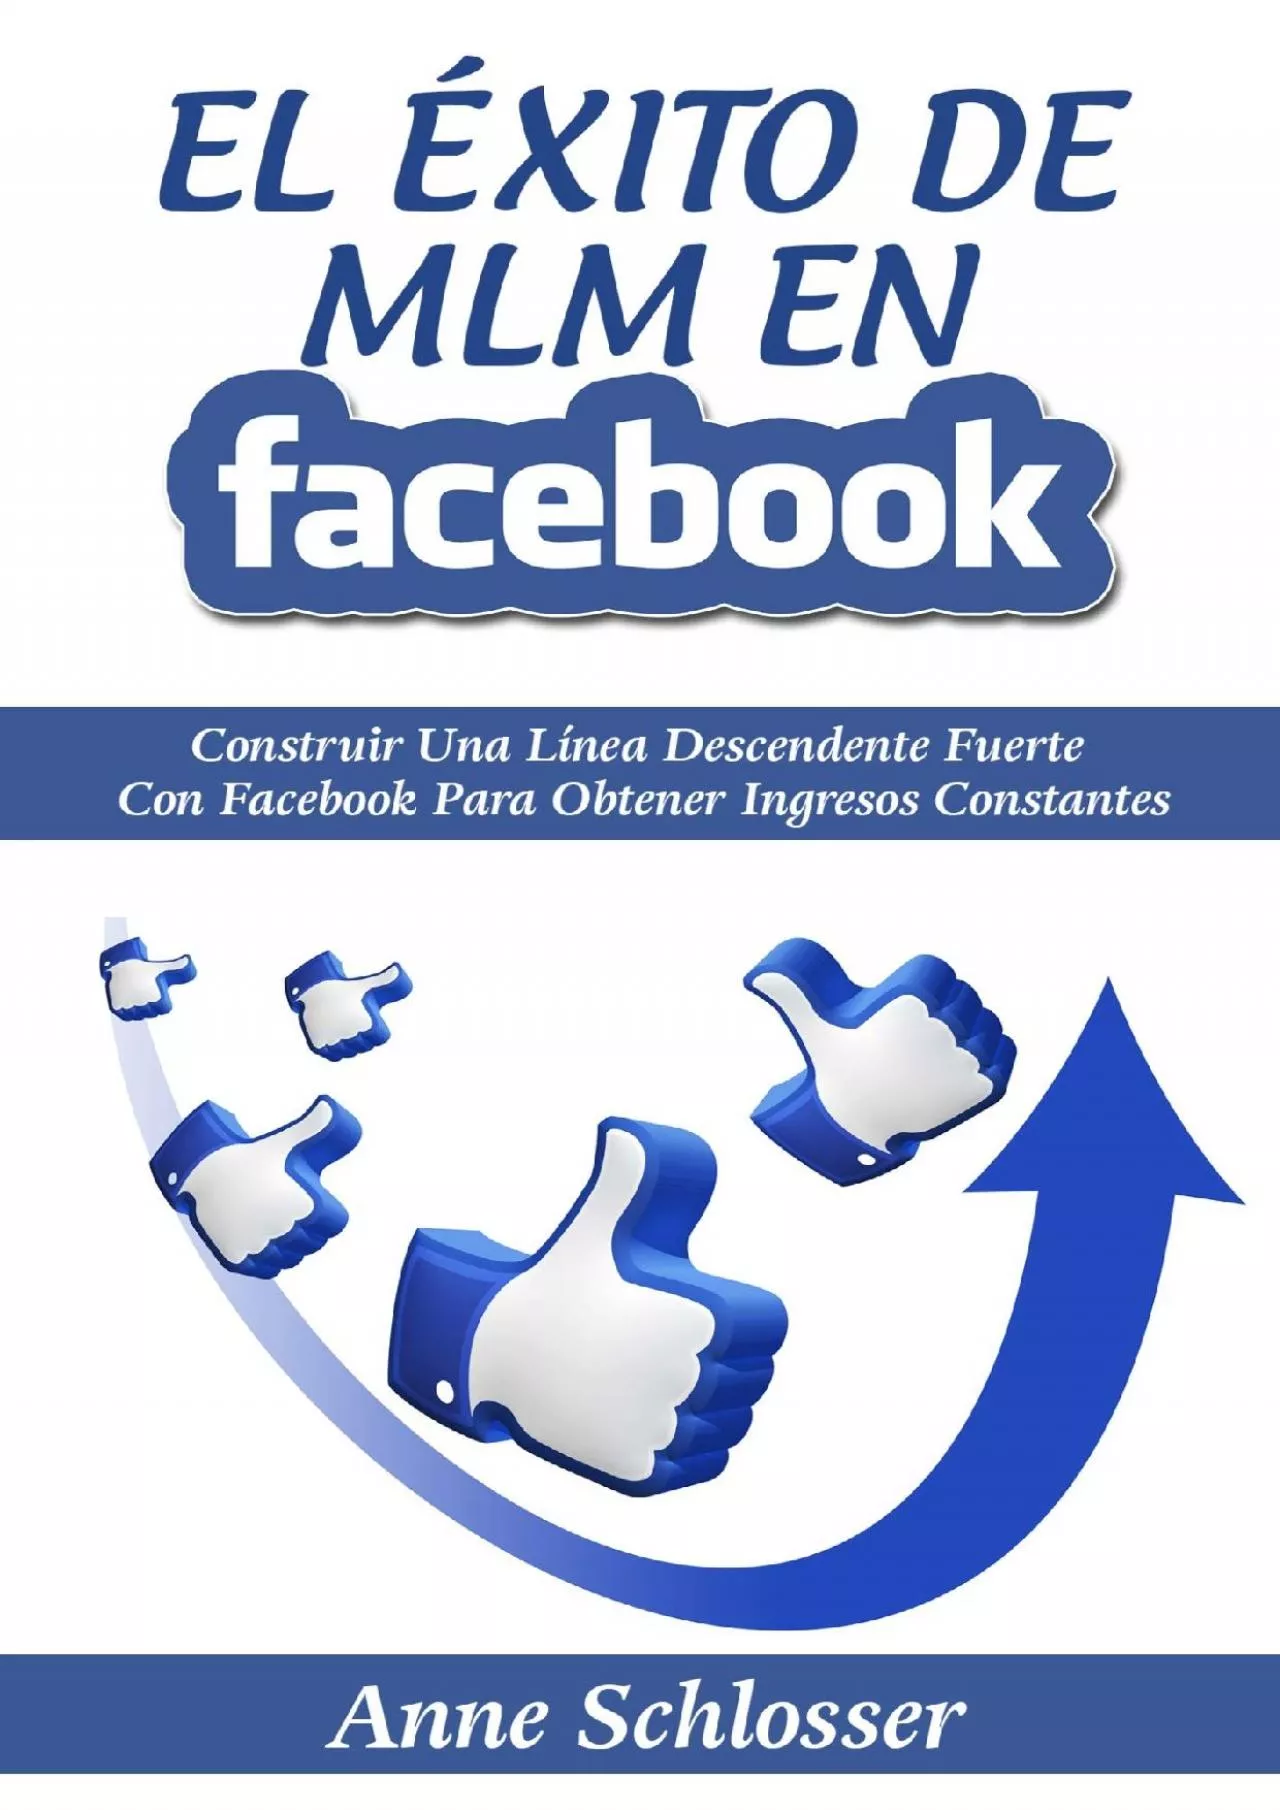 El Éxito de MLM En Facebook: Construir Una Línea Descendente Fuerte Con Facebook Para